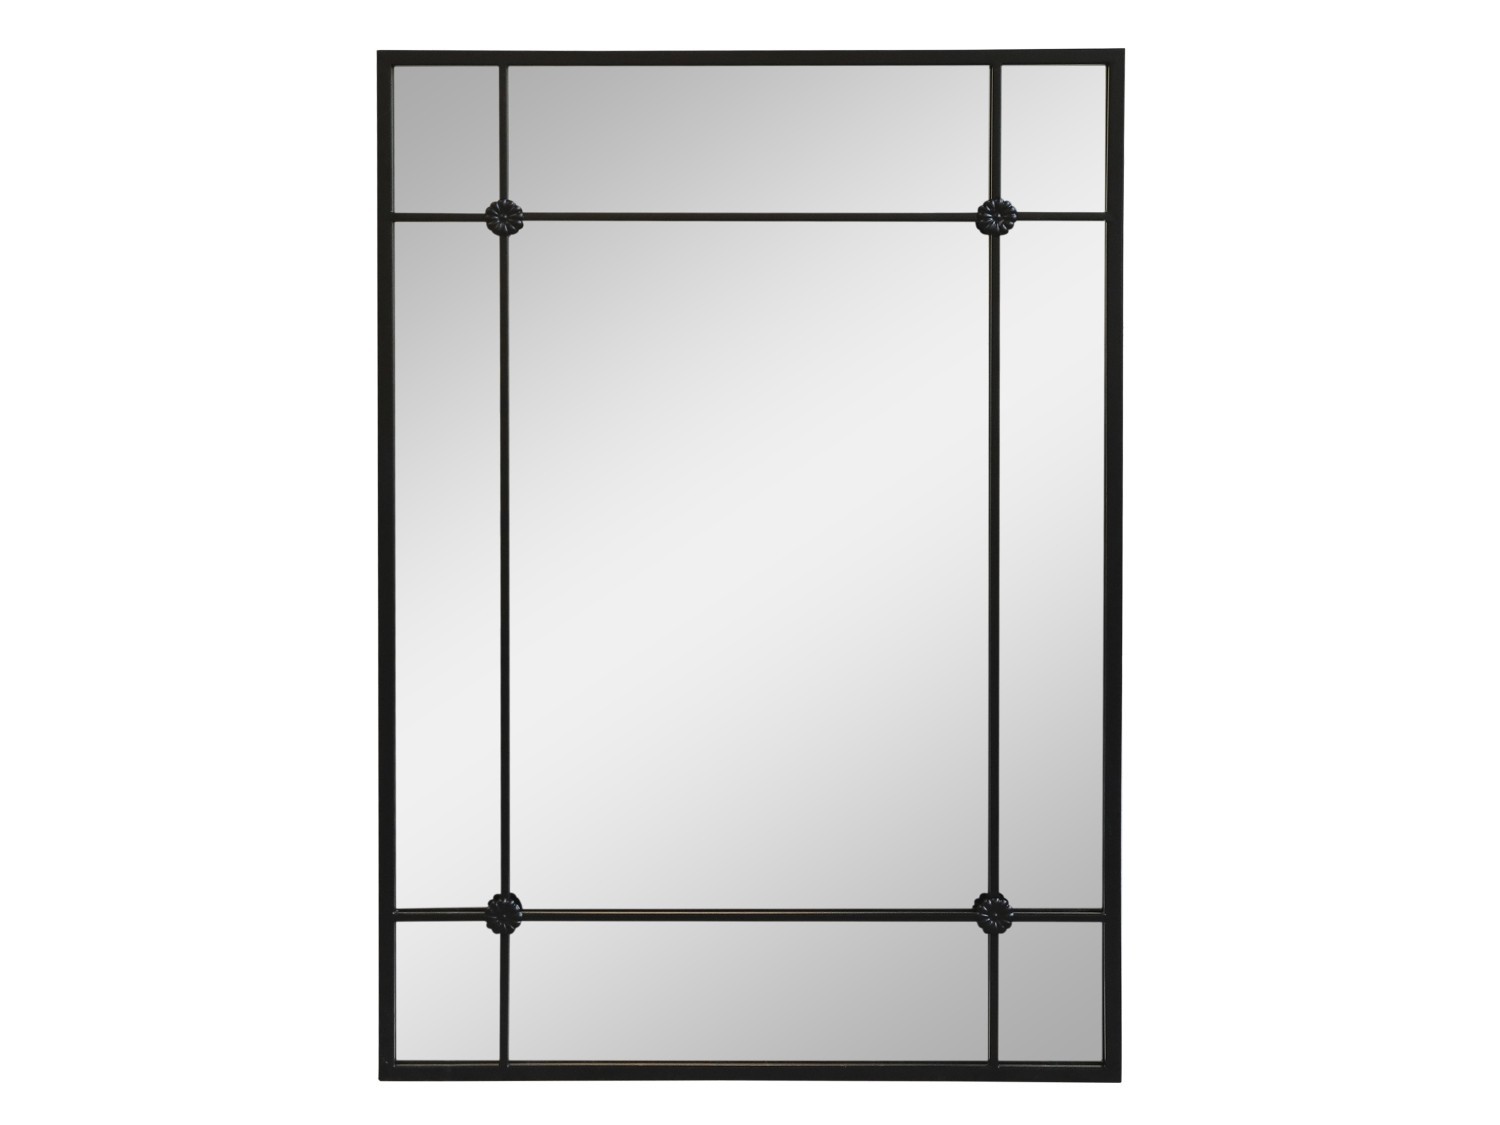 Černé antik kovové nástěnné zrcadlo Industrial - 70*2*100 cm 22022124 (22221-24)